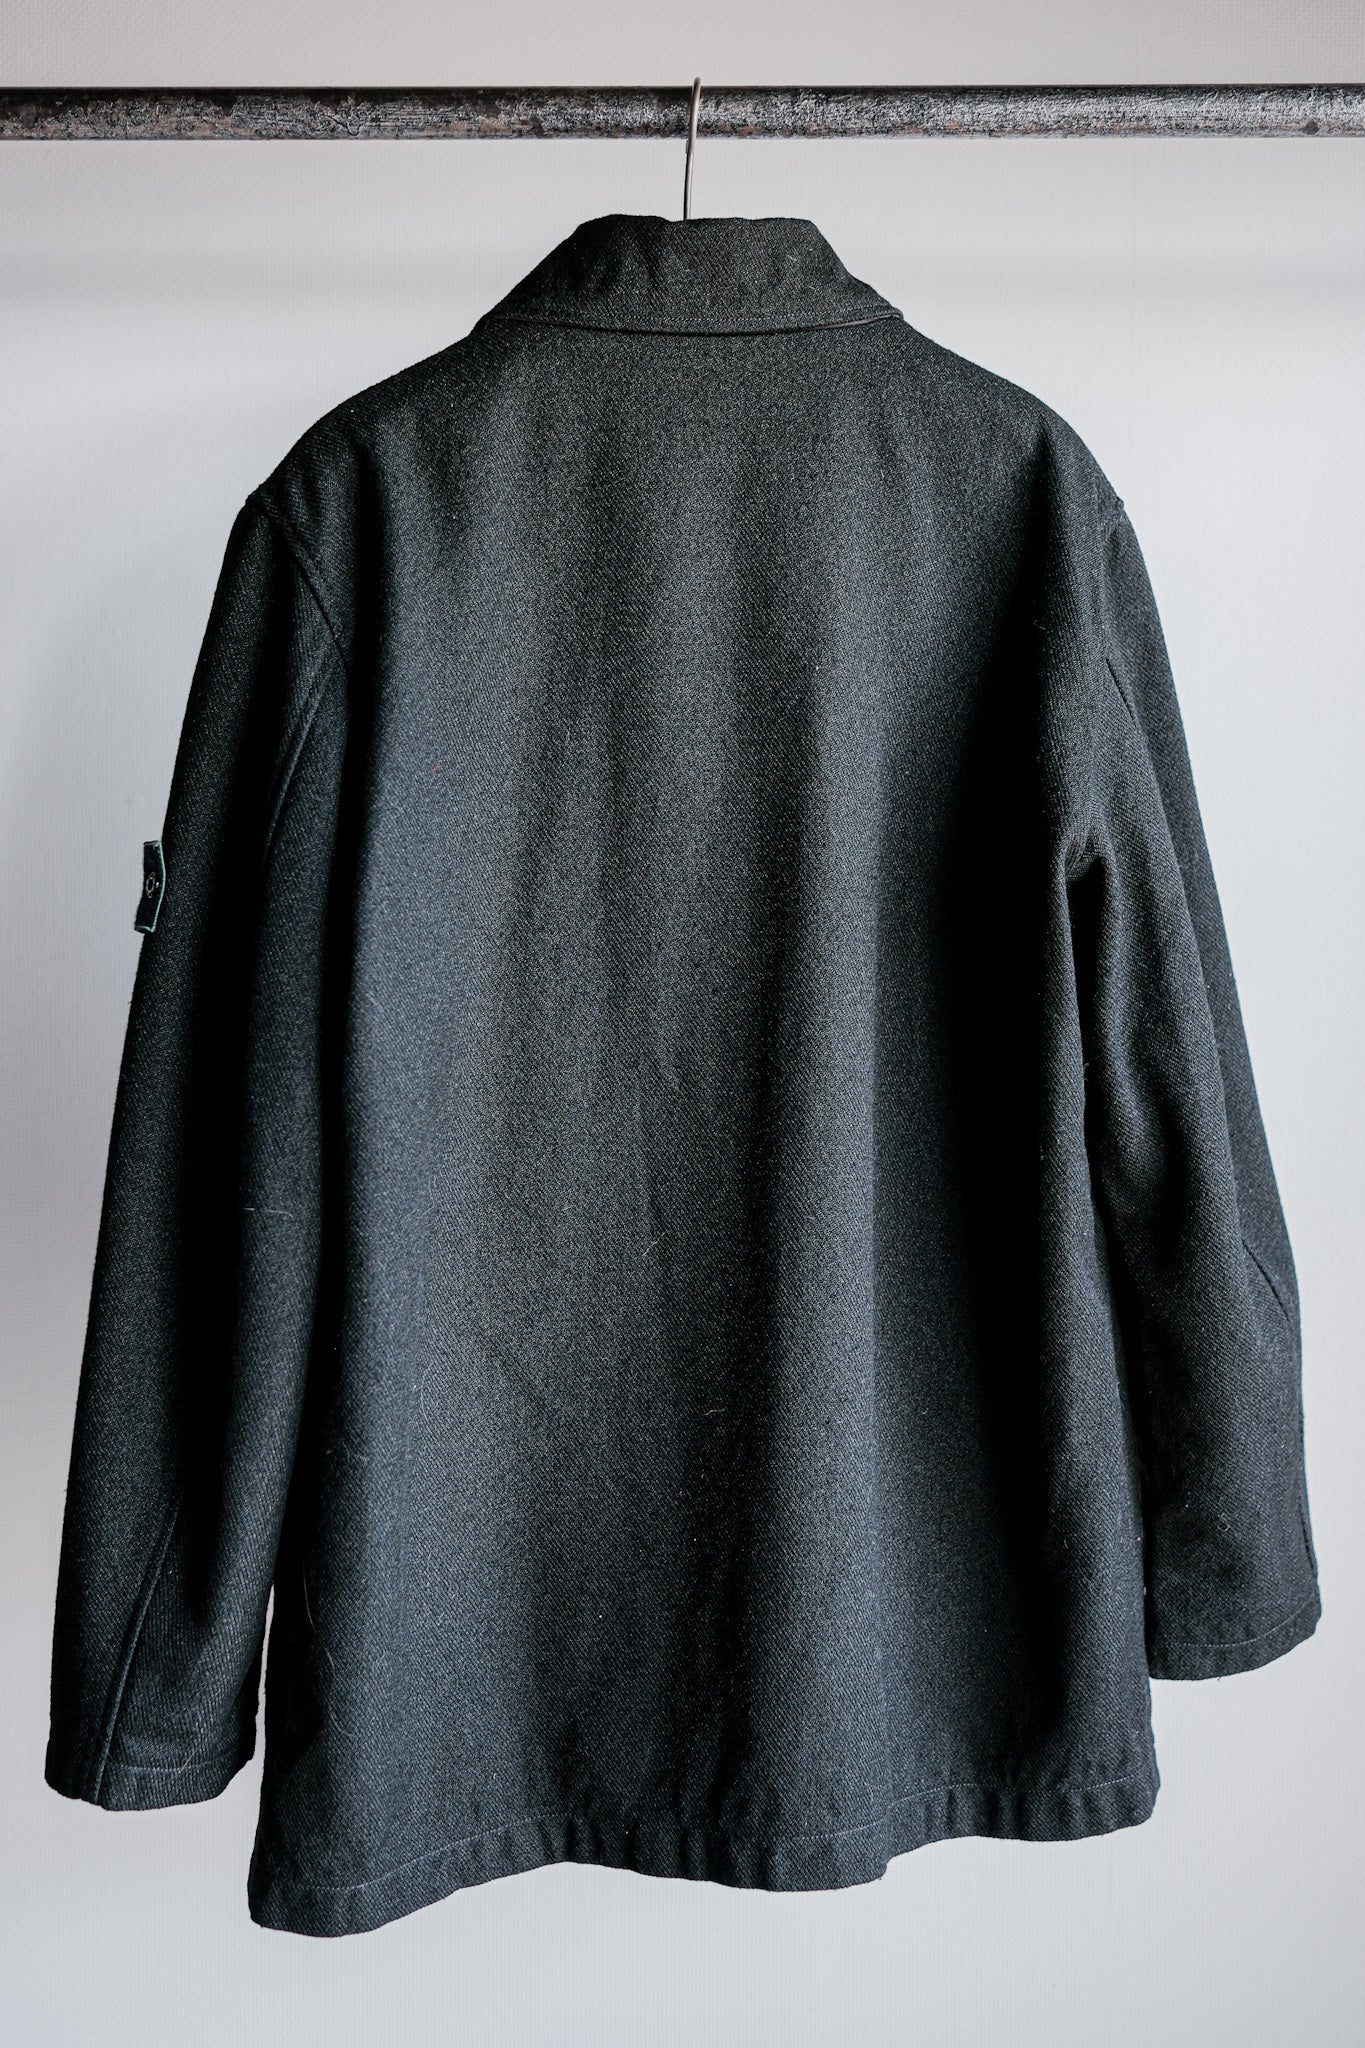 98AW】Old STONE ISLAND Nylon Jacket Size.L 